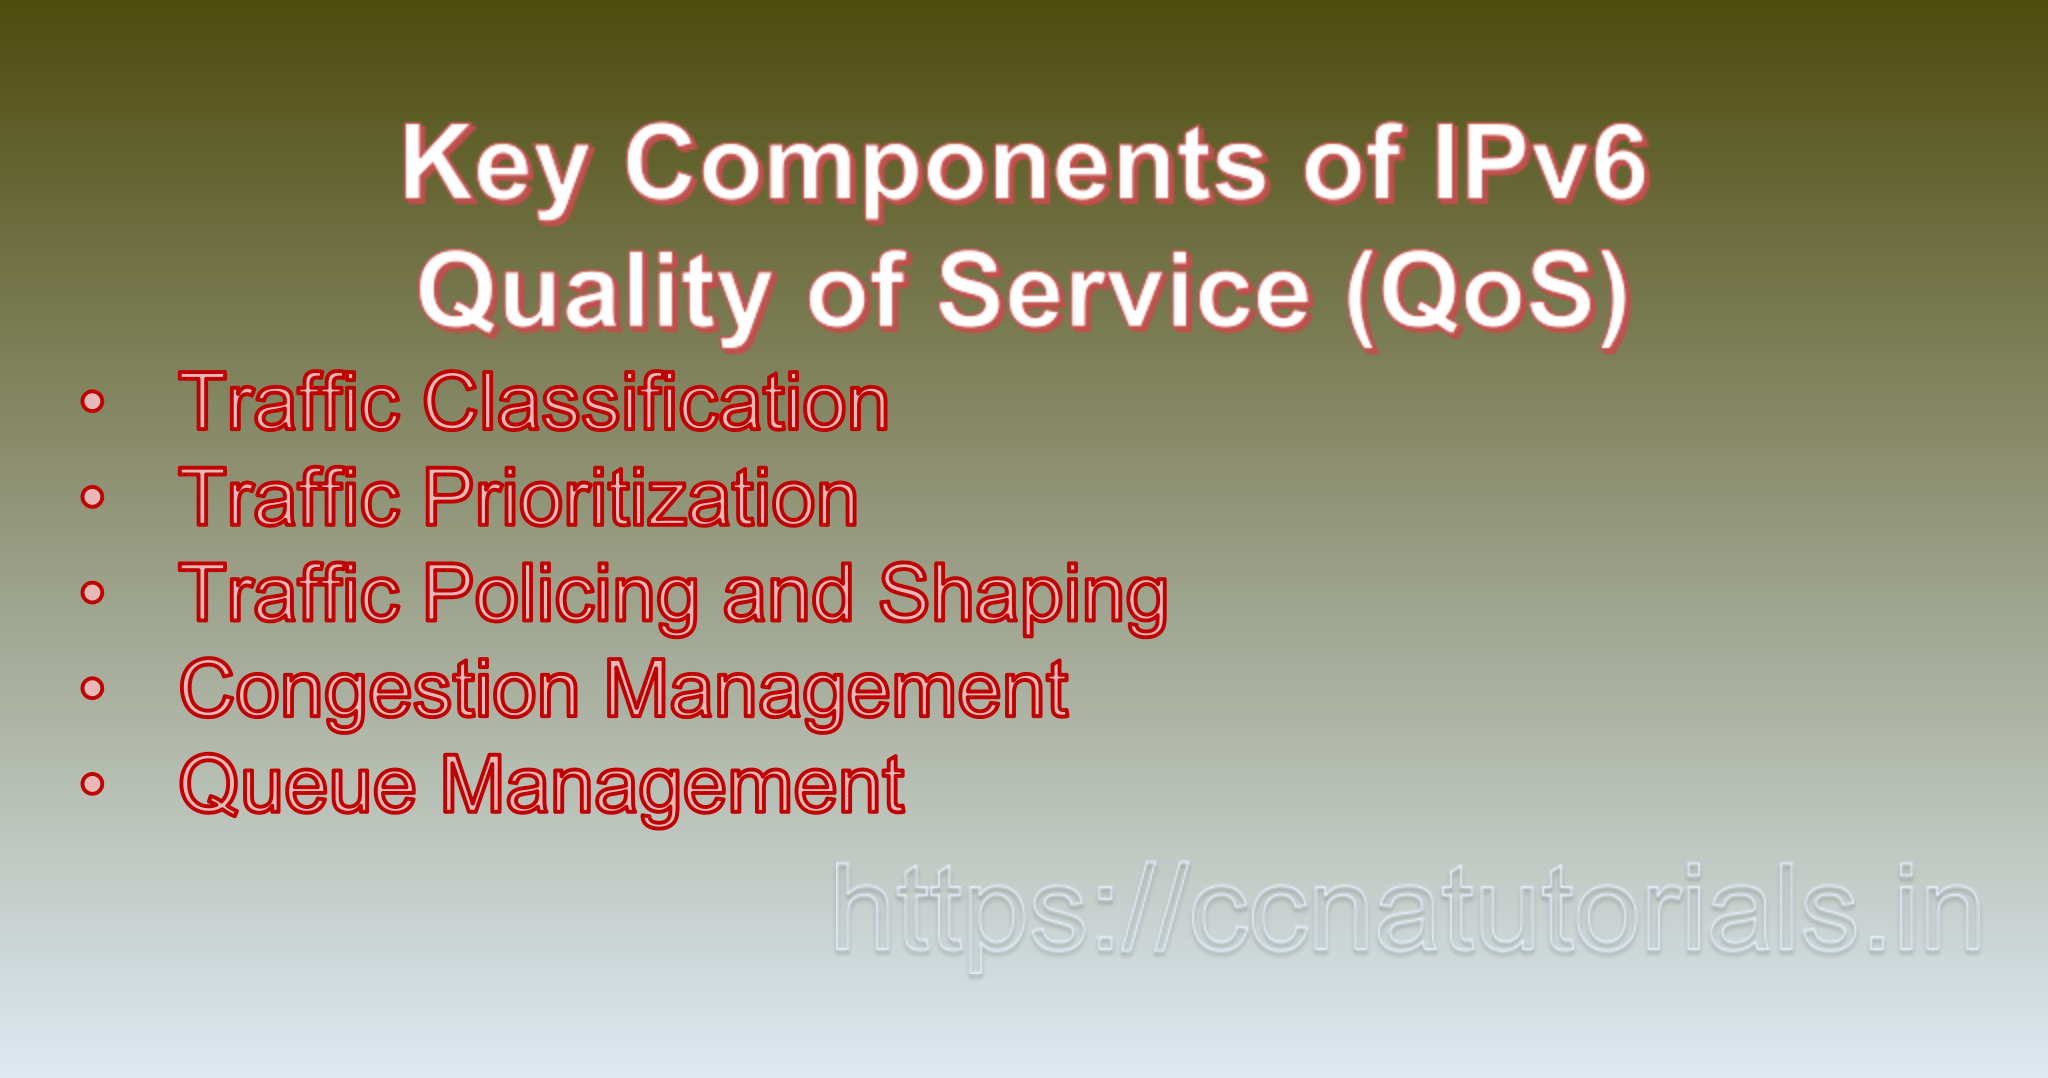 IPv6 Quality of Service (QoS), ccna, ccna tutorials